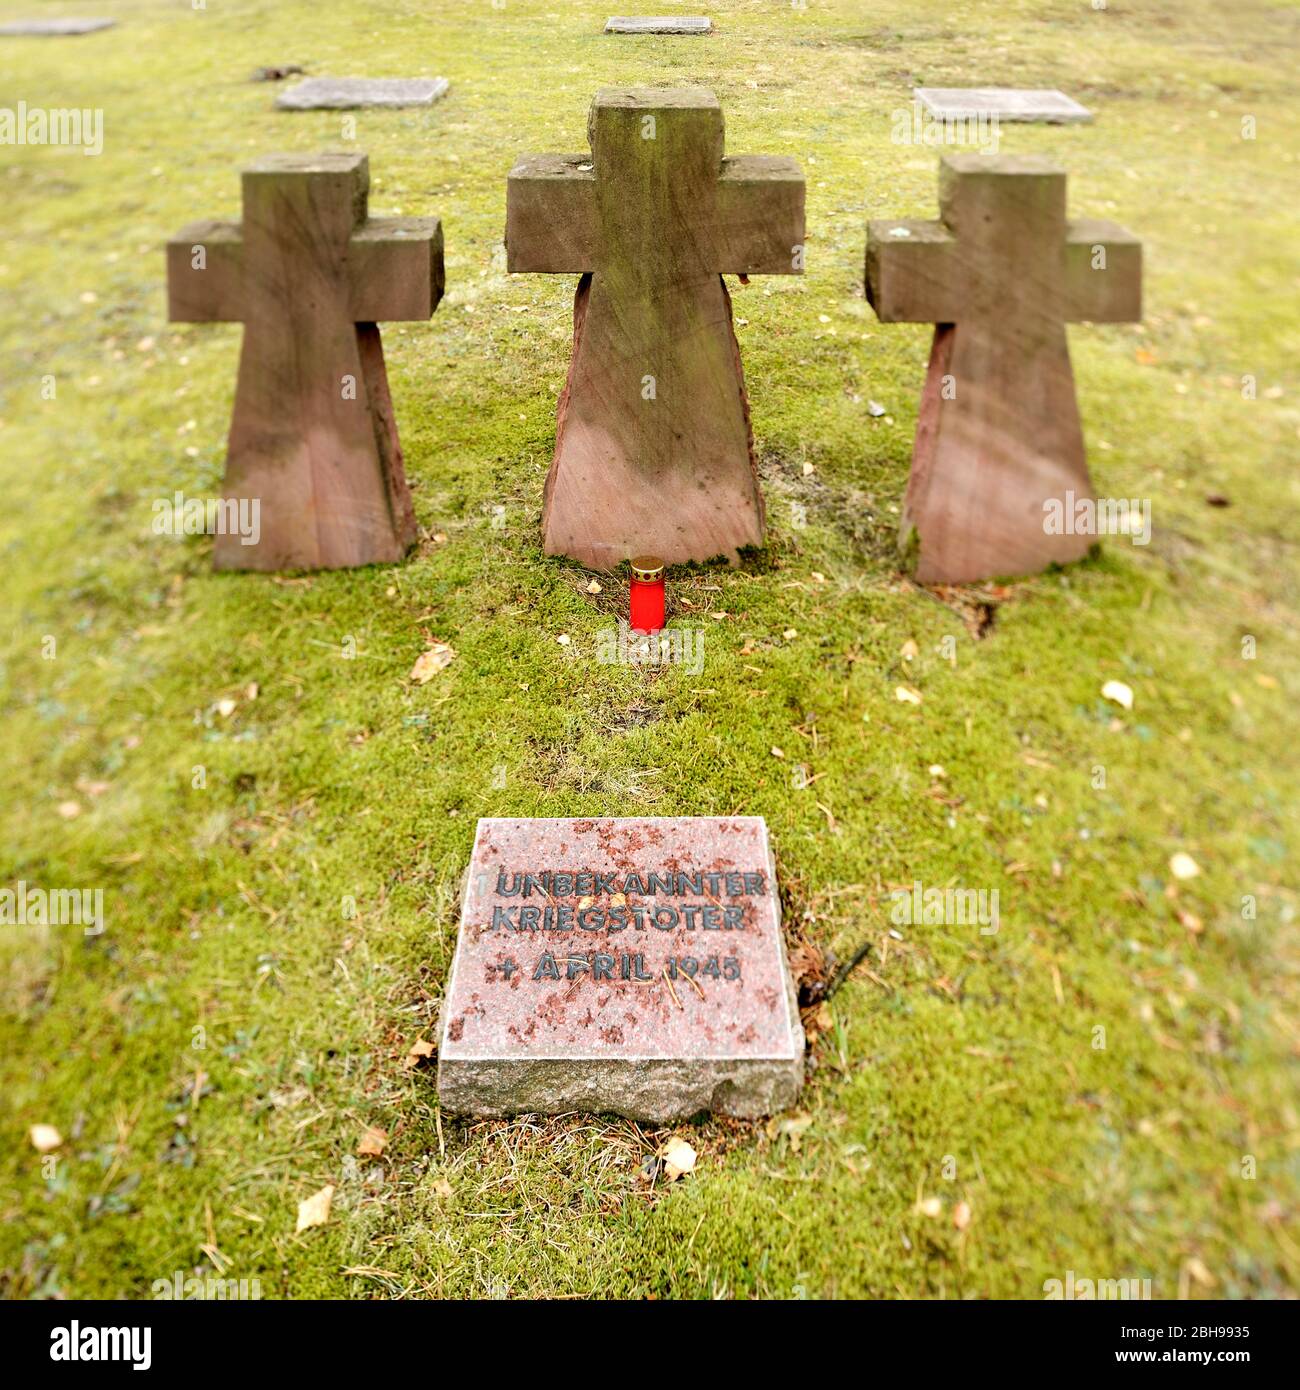 Waldfriedhof Halbe, cimitero militare, una delle più grandi tombe di guerra in Germania per 28,000 vittime della seconda guerra mondiale, lastre di tomba e croci di pietra, nitidezza selettiva, Halbe, Brandeburgo, Germania Foto Stock